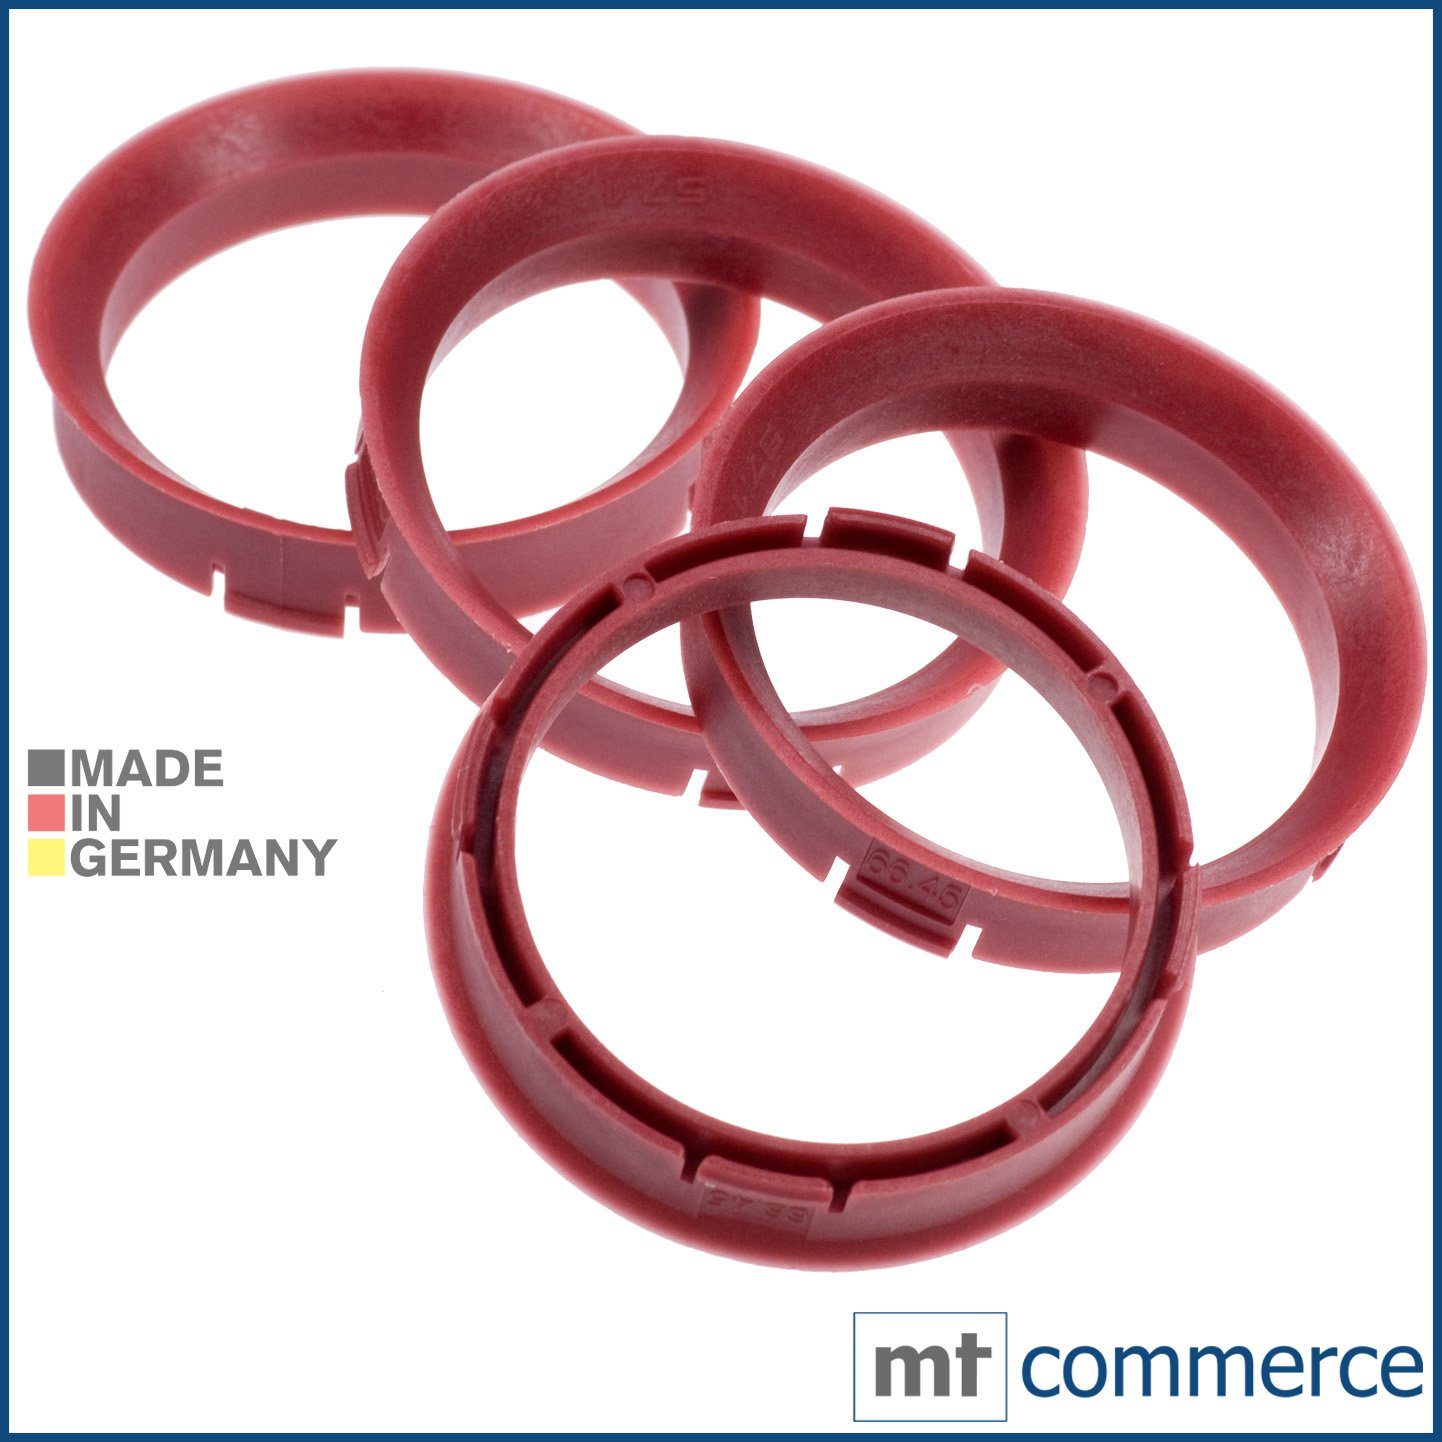 RKC Reifenstift 4X Zentrierringe rot Felgen Ringe Made in Germany, Maße: 67,45 x 57,1 mm